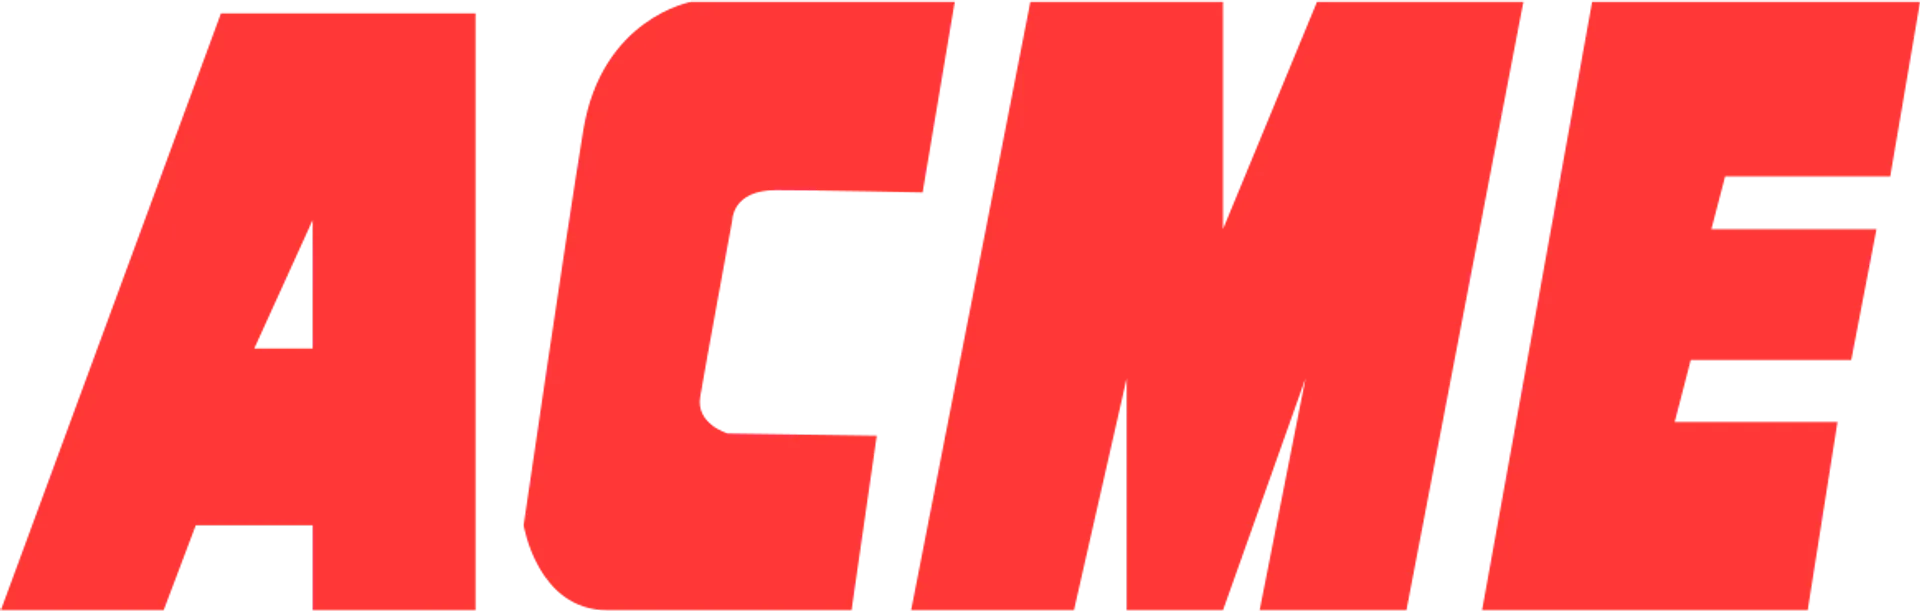 ACME logo de catálogo